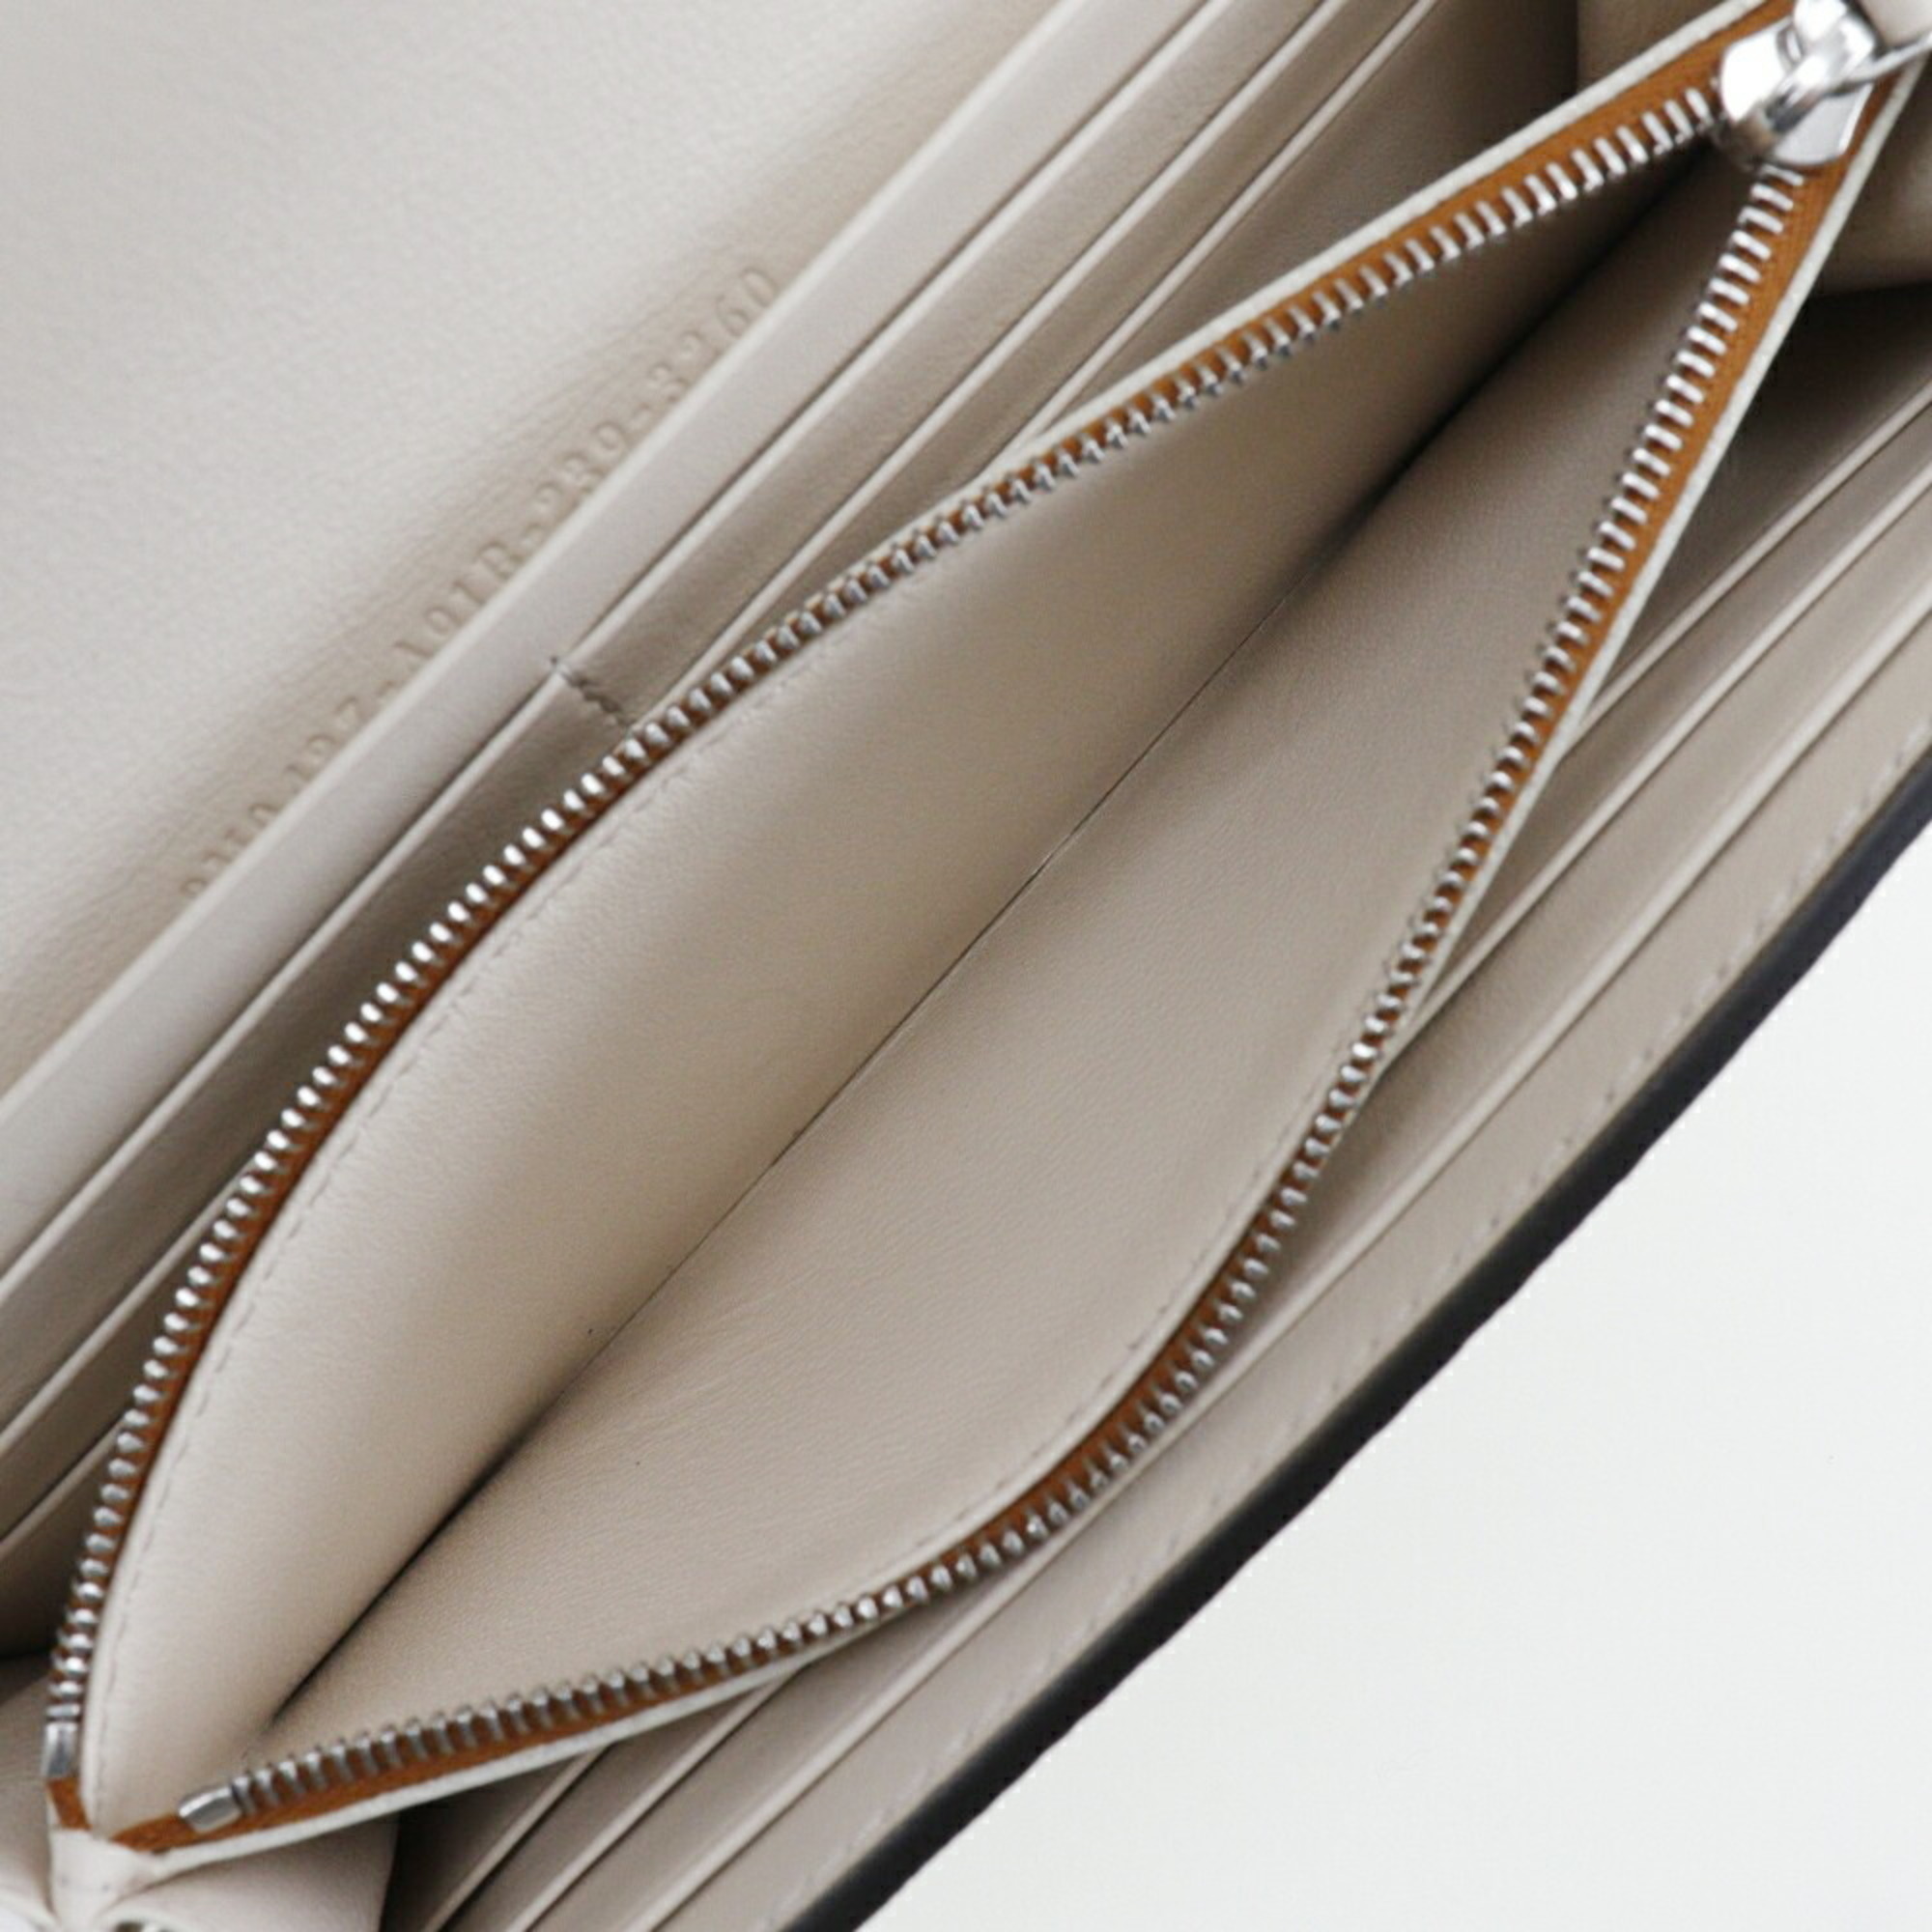 FENDI Peekaboo Celeria Long Wallet 8M0427-A91B Leather Made in Italy Brown Silver Hardware Turn Lock Women's